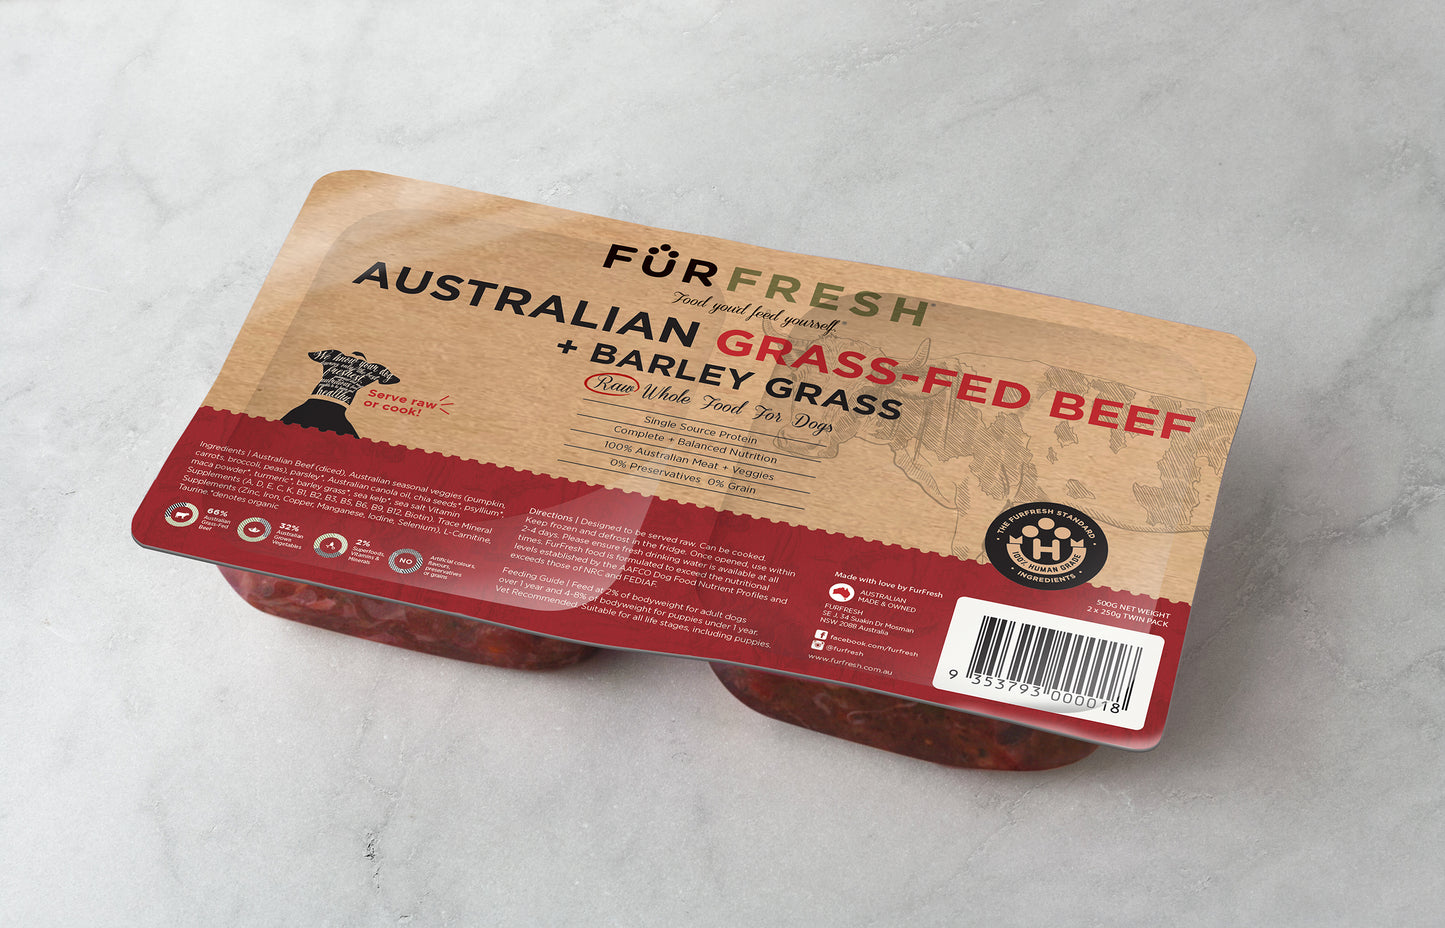 Australian Grass-Fed Beef + Barley Grass 500g Twin Pack